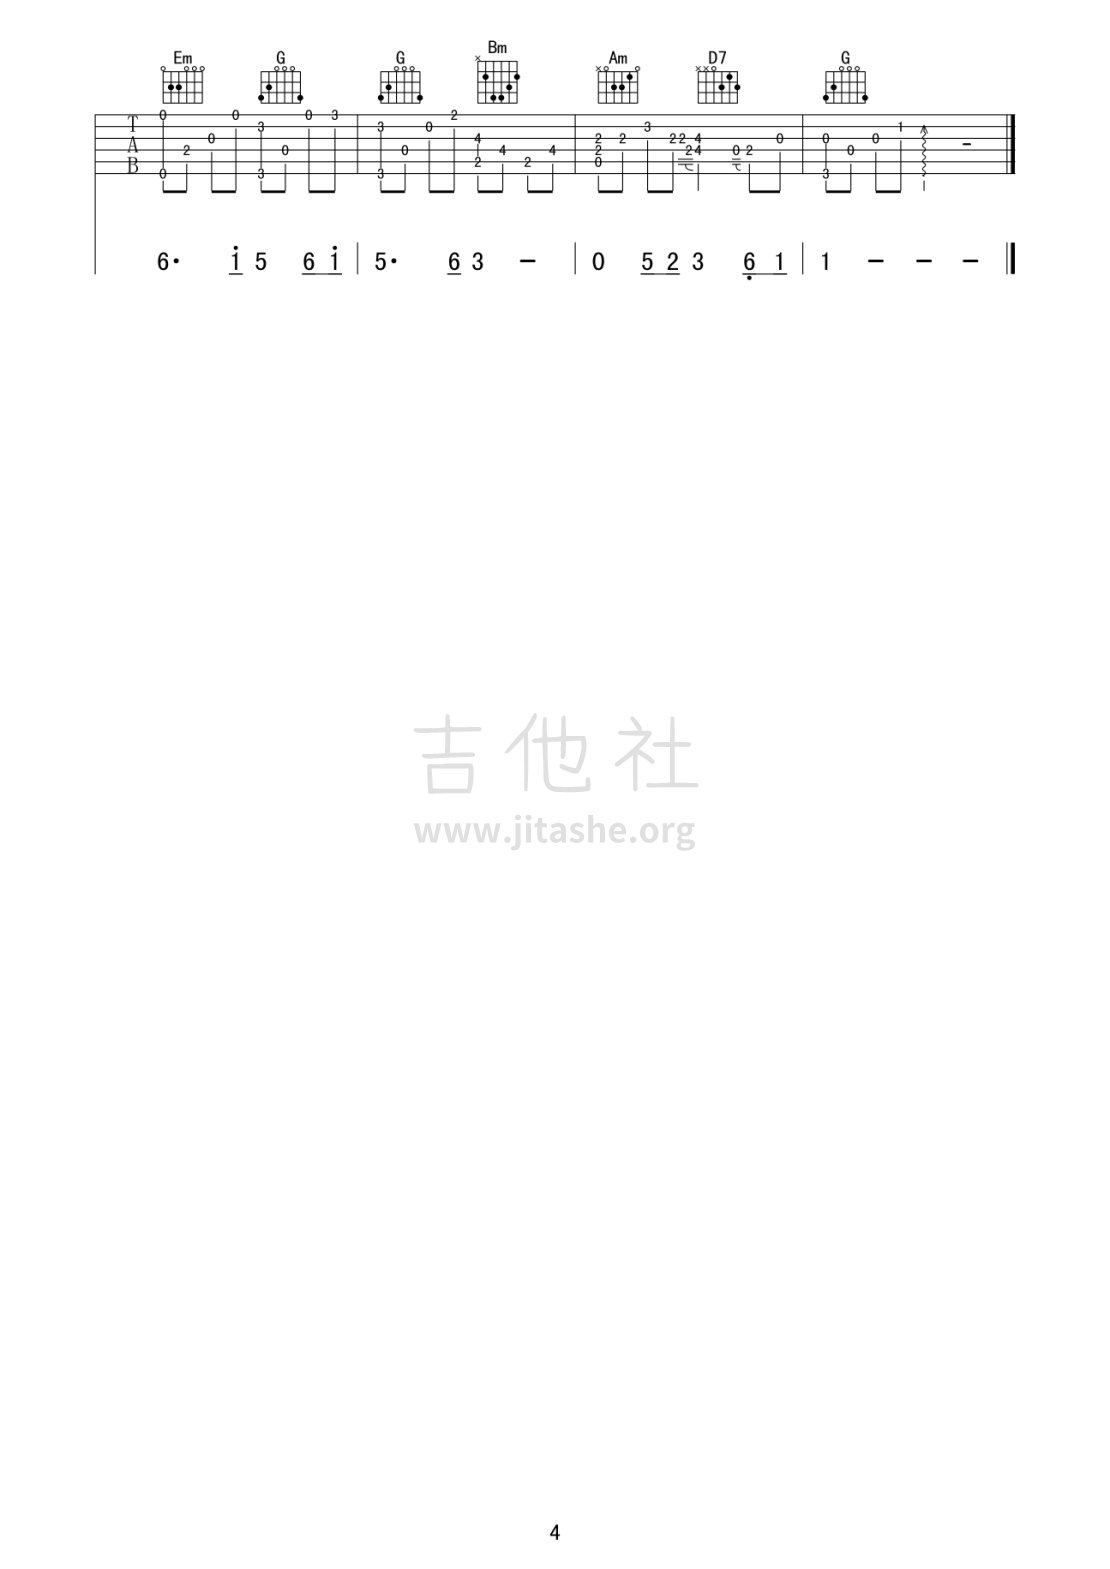 打印:西游记 - 女儿情吉他谱_原声带(OST;Original Soundtrack;电影)_西游记 女儿情04.gif